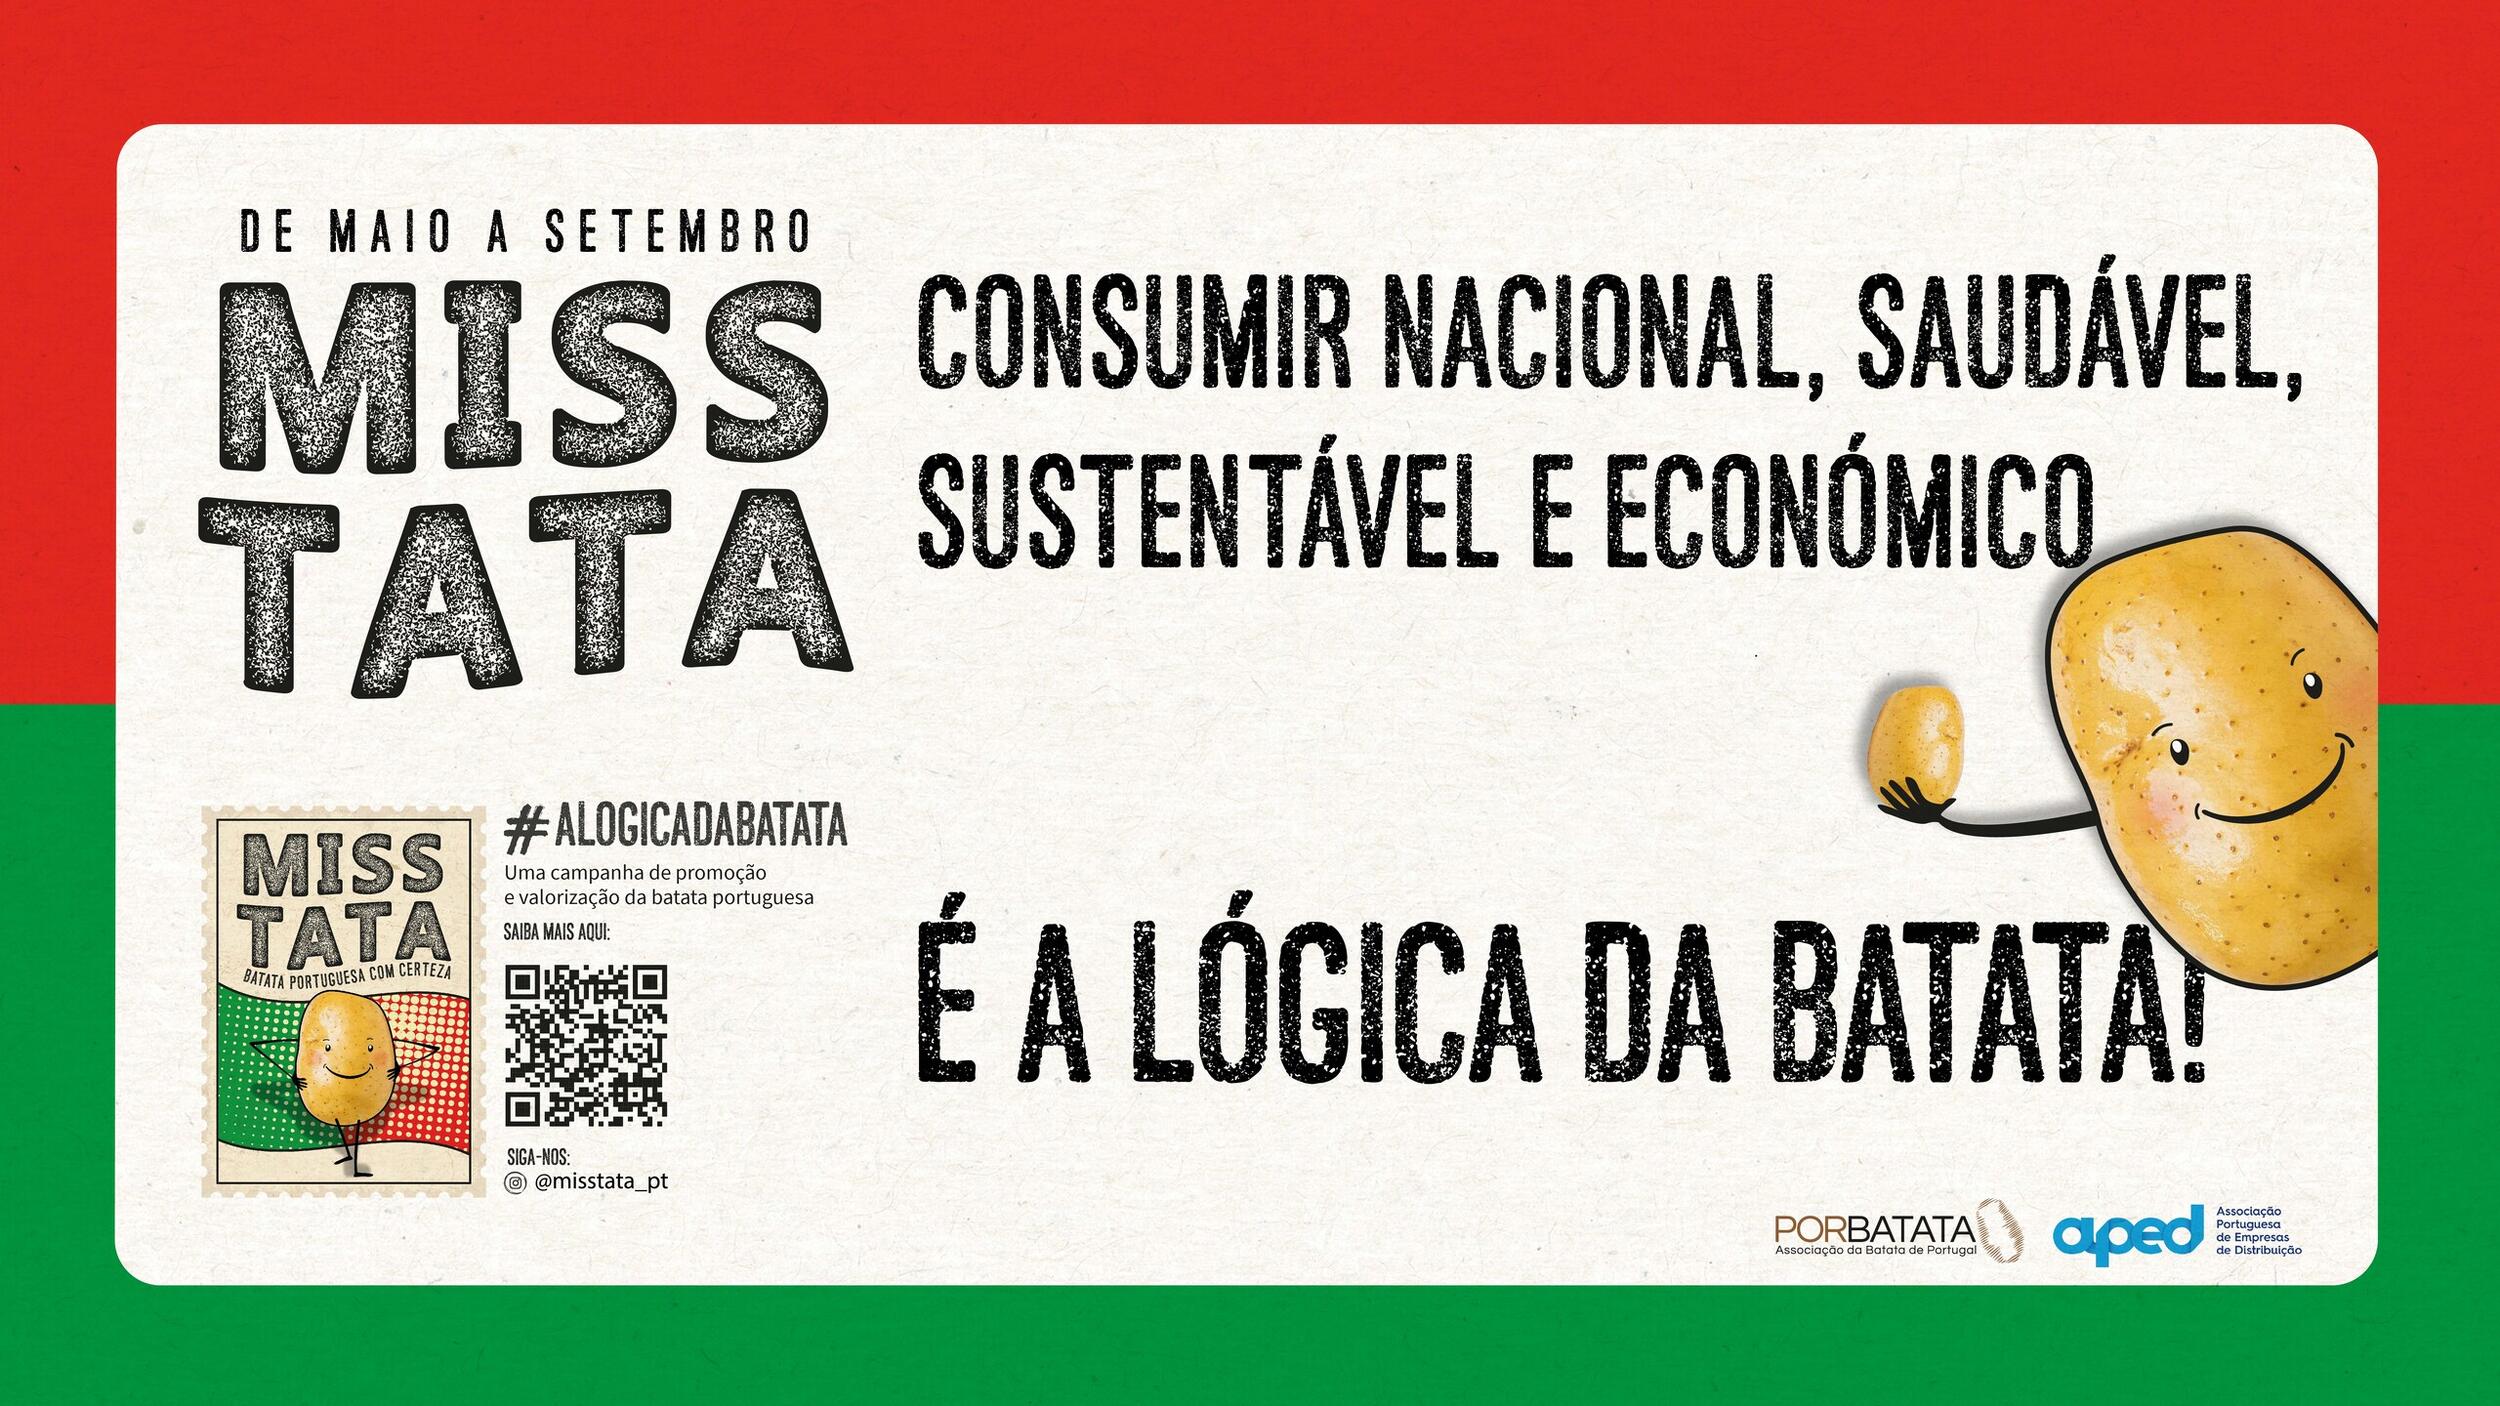 Porbatata promove consumo da batata portuguesa